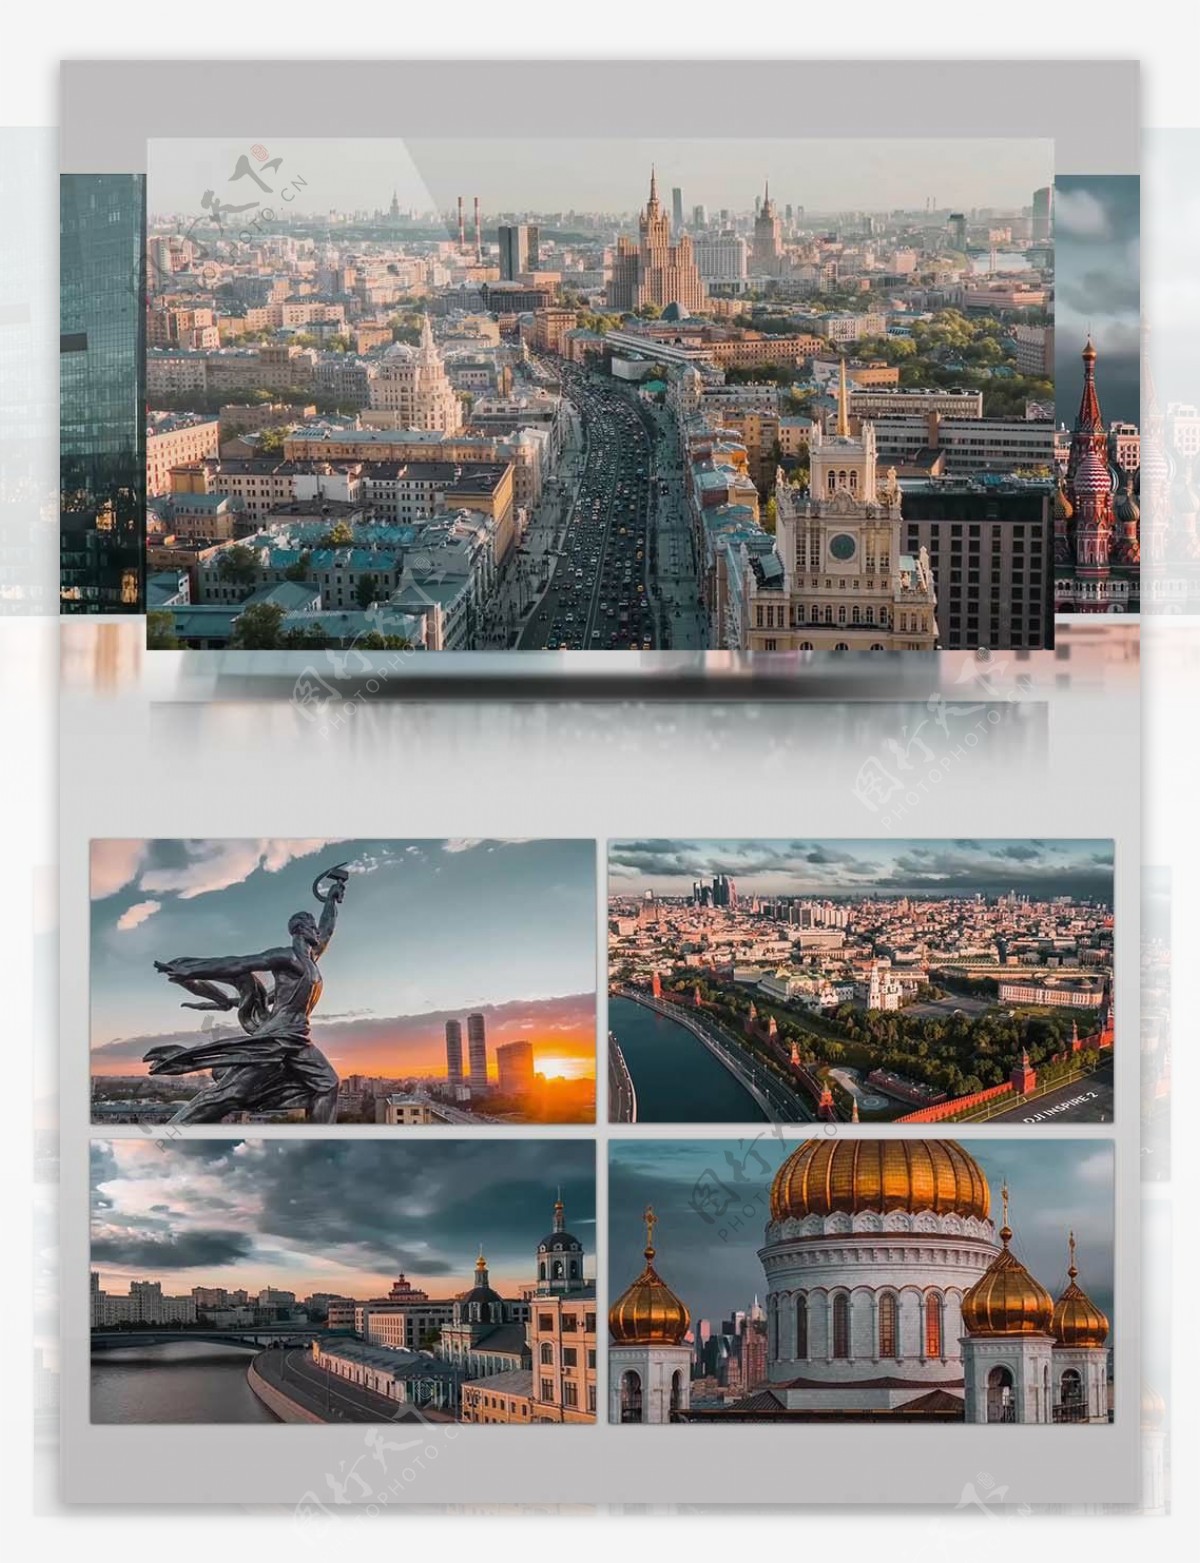 4K超清实拍莫斯科城市景观视频素材